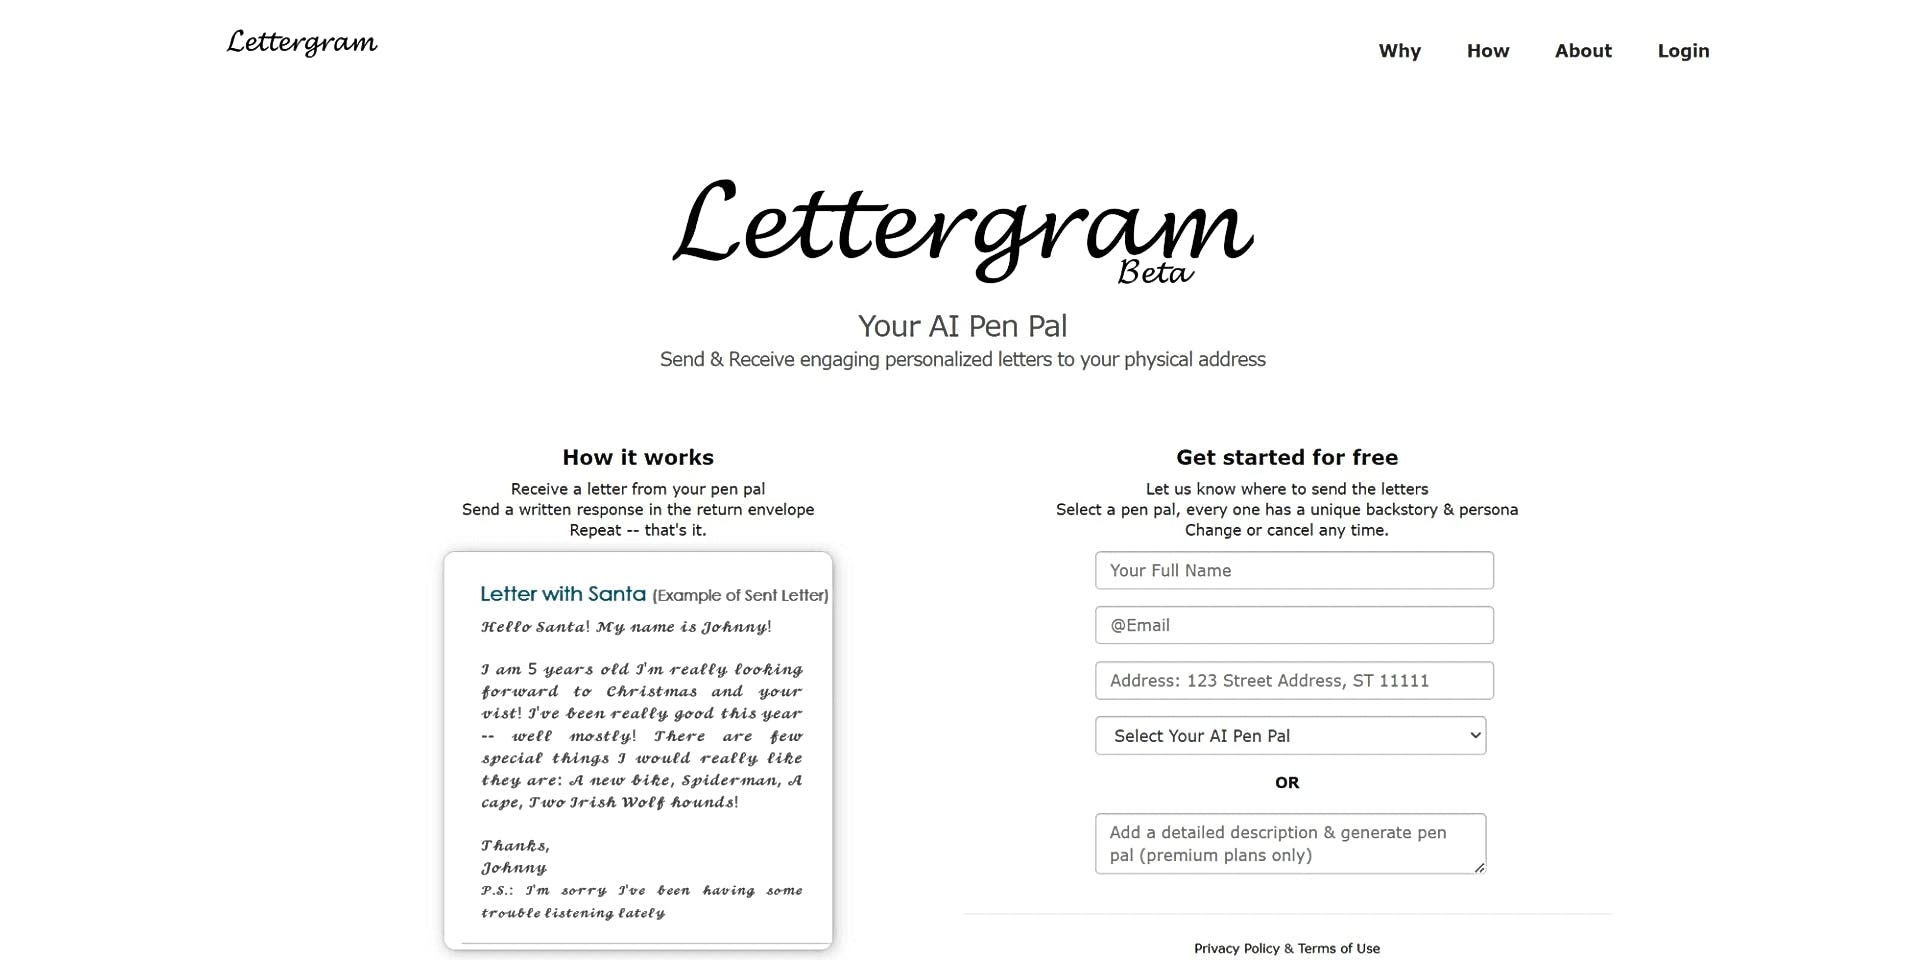 Lettergram featured